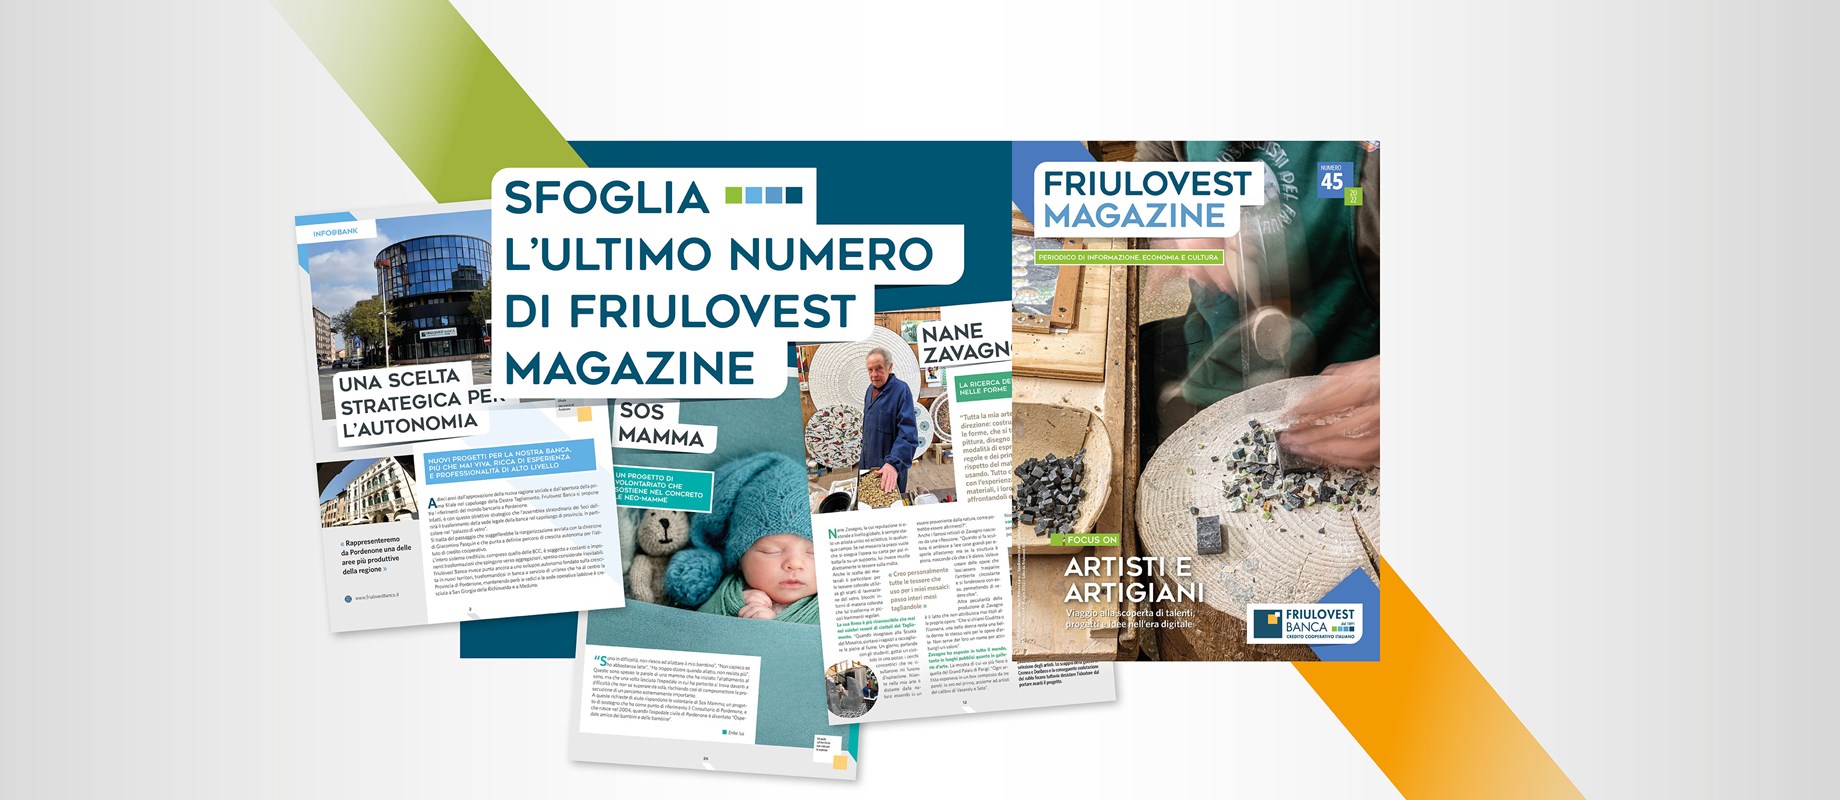 Il nuovo numero di Friulovest Magazine è online! 